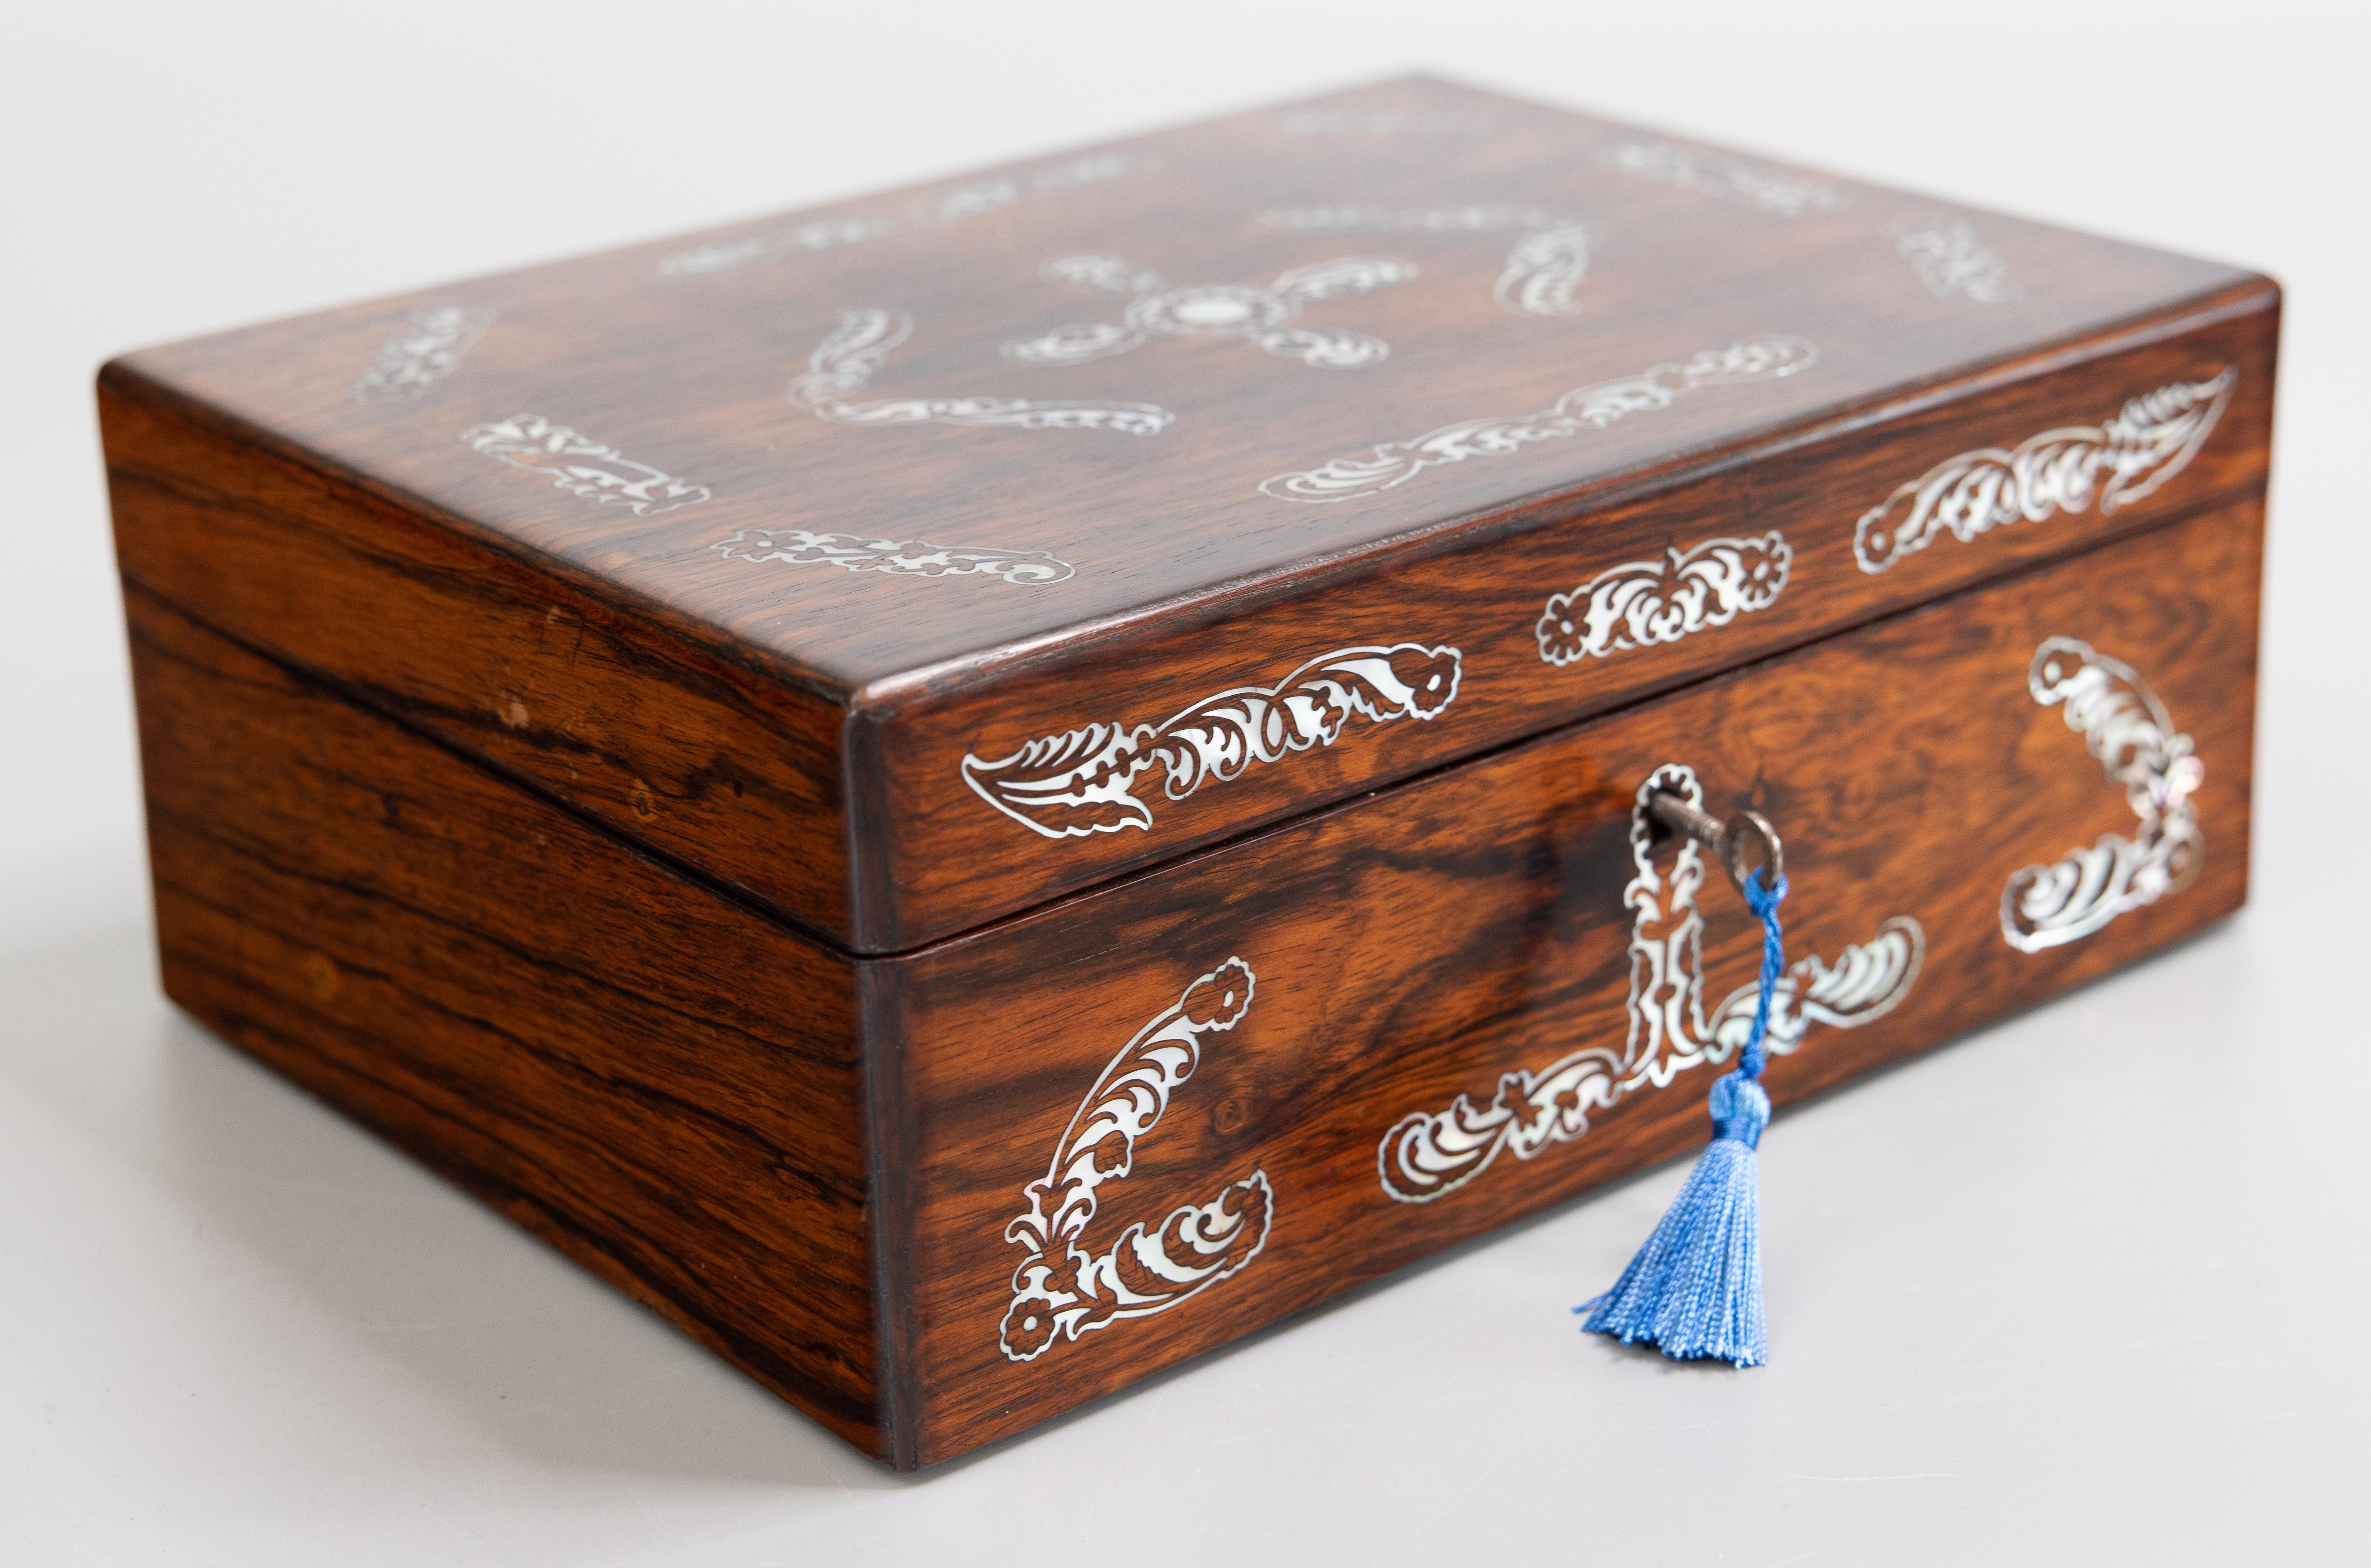 Superbe boîte à bijoux victorienne en bois de rose anglais, avec intérieur aménagé, plateau à bijoux intérieur amovible, serrure et clé en état de marche, vers 1850. Le couvercle et la face avant de cette boîte exquise sont décorés de motifs floraux